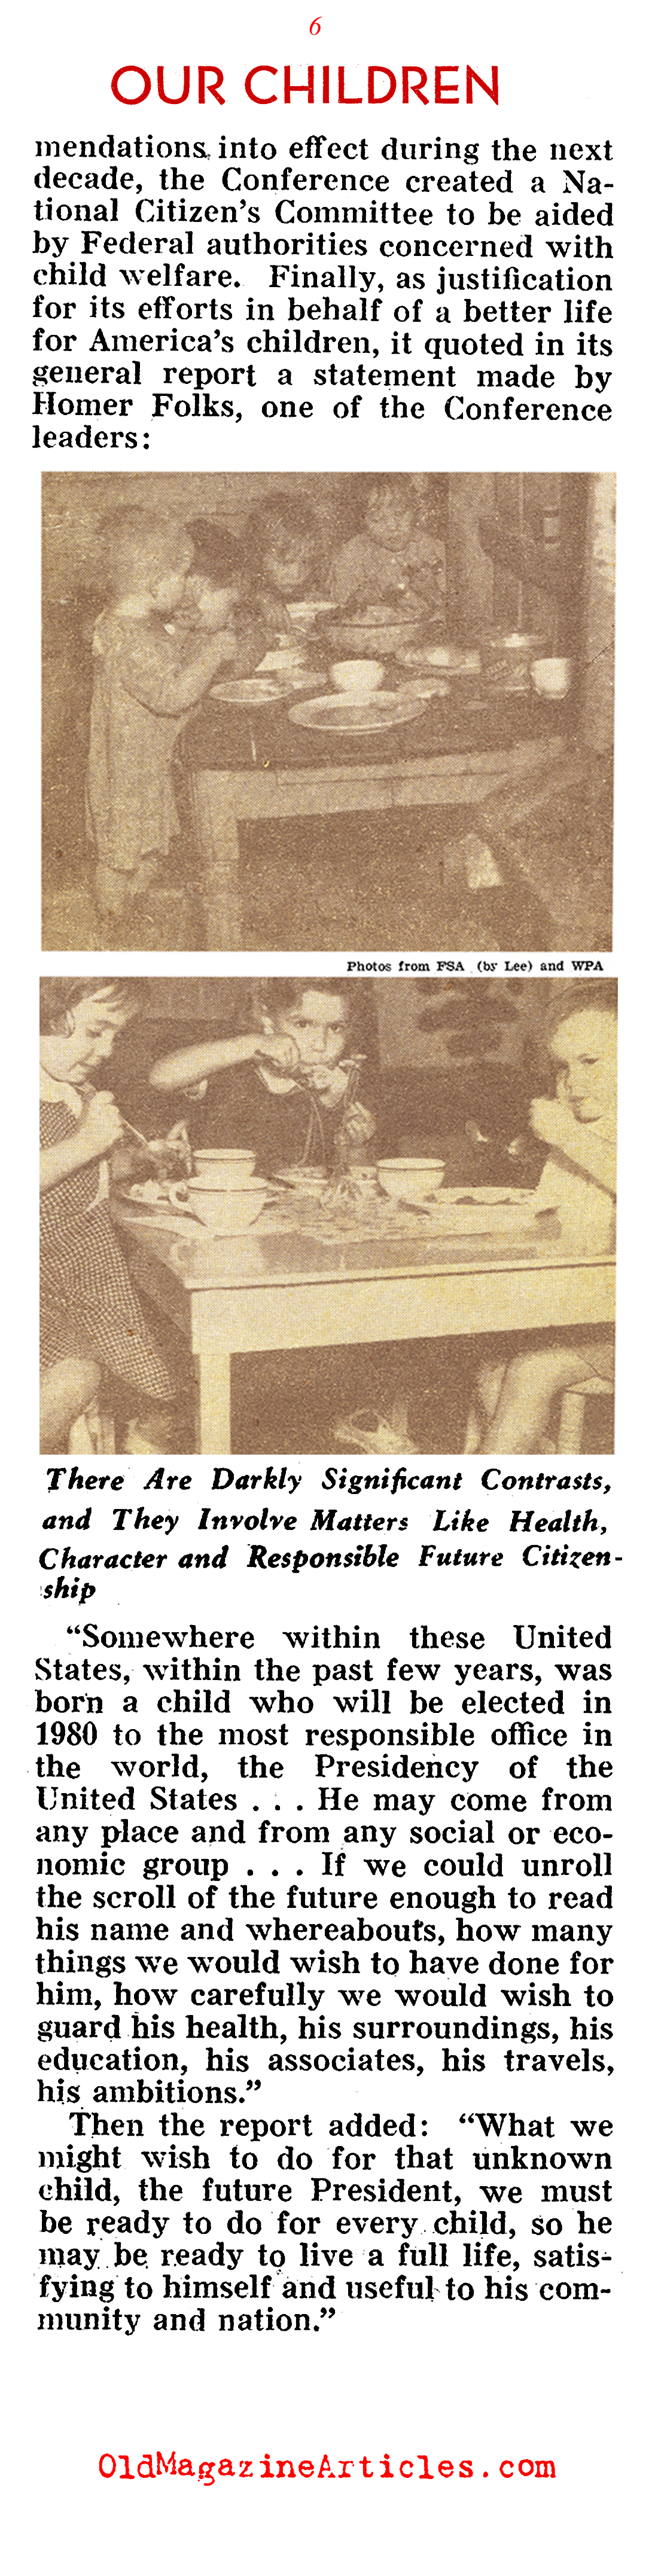 Children in Need (Pathfinder Magazine, 1940)